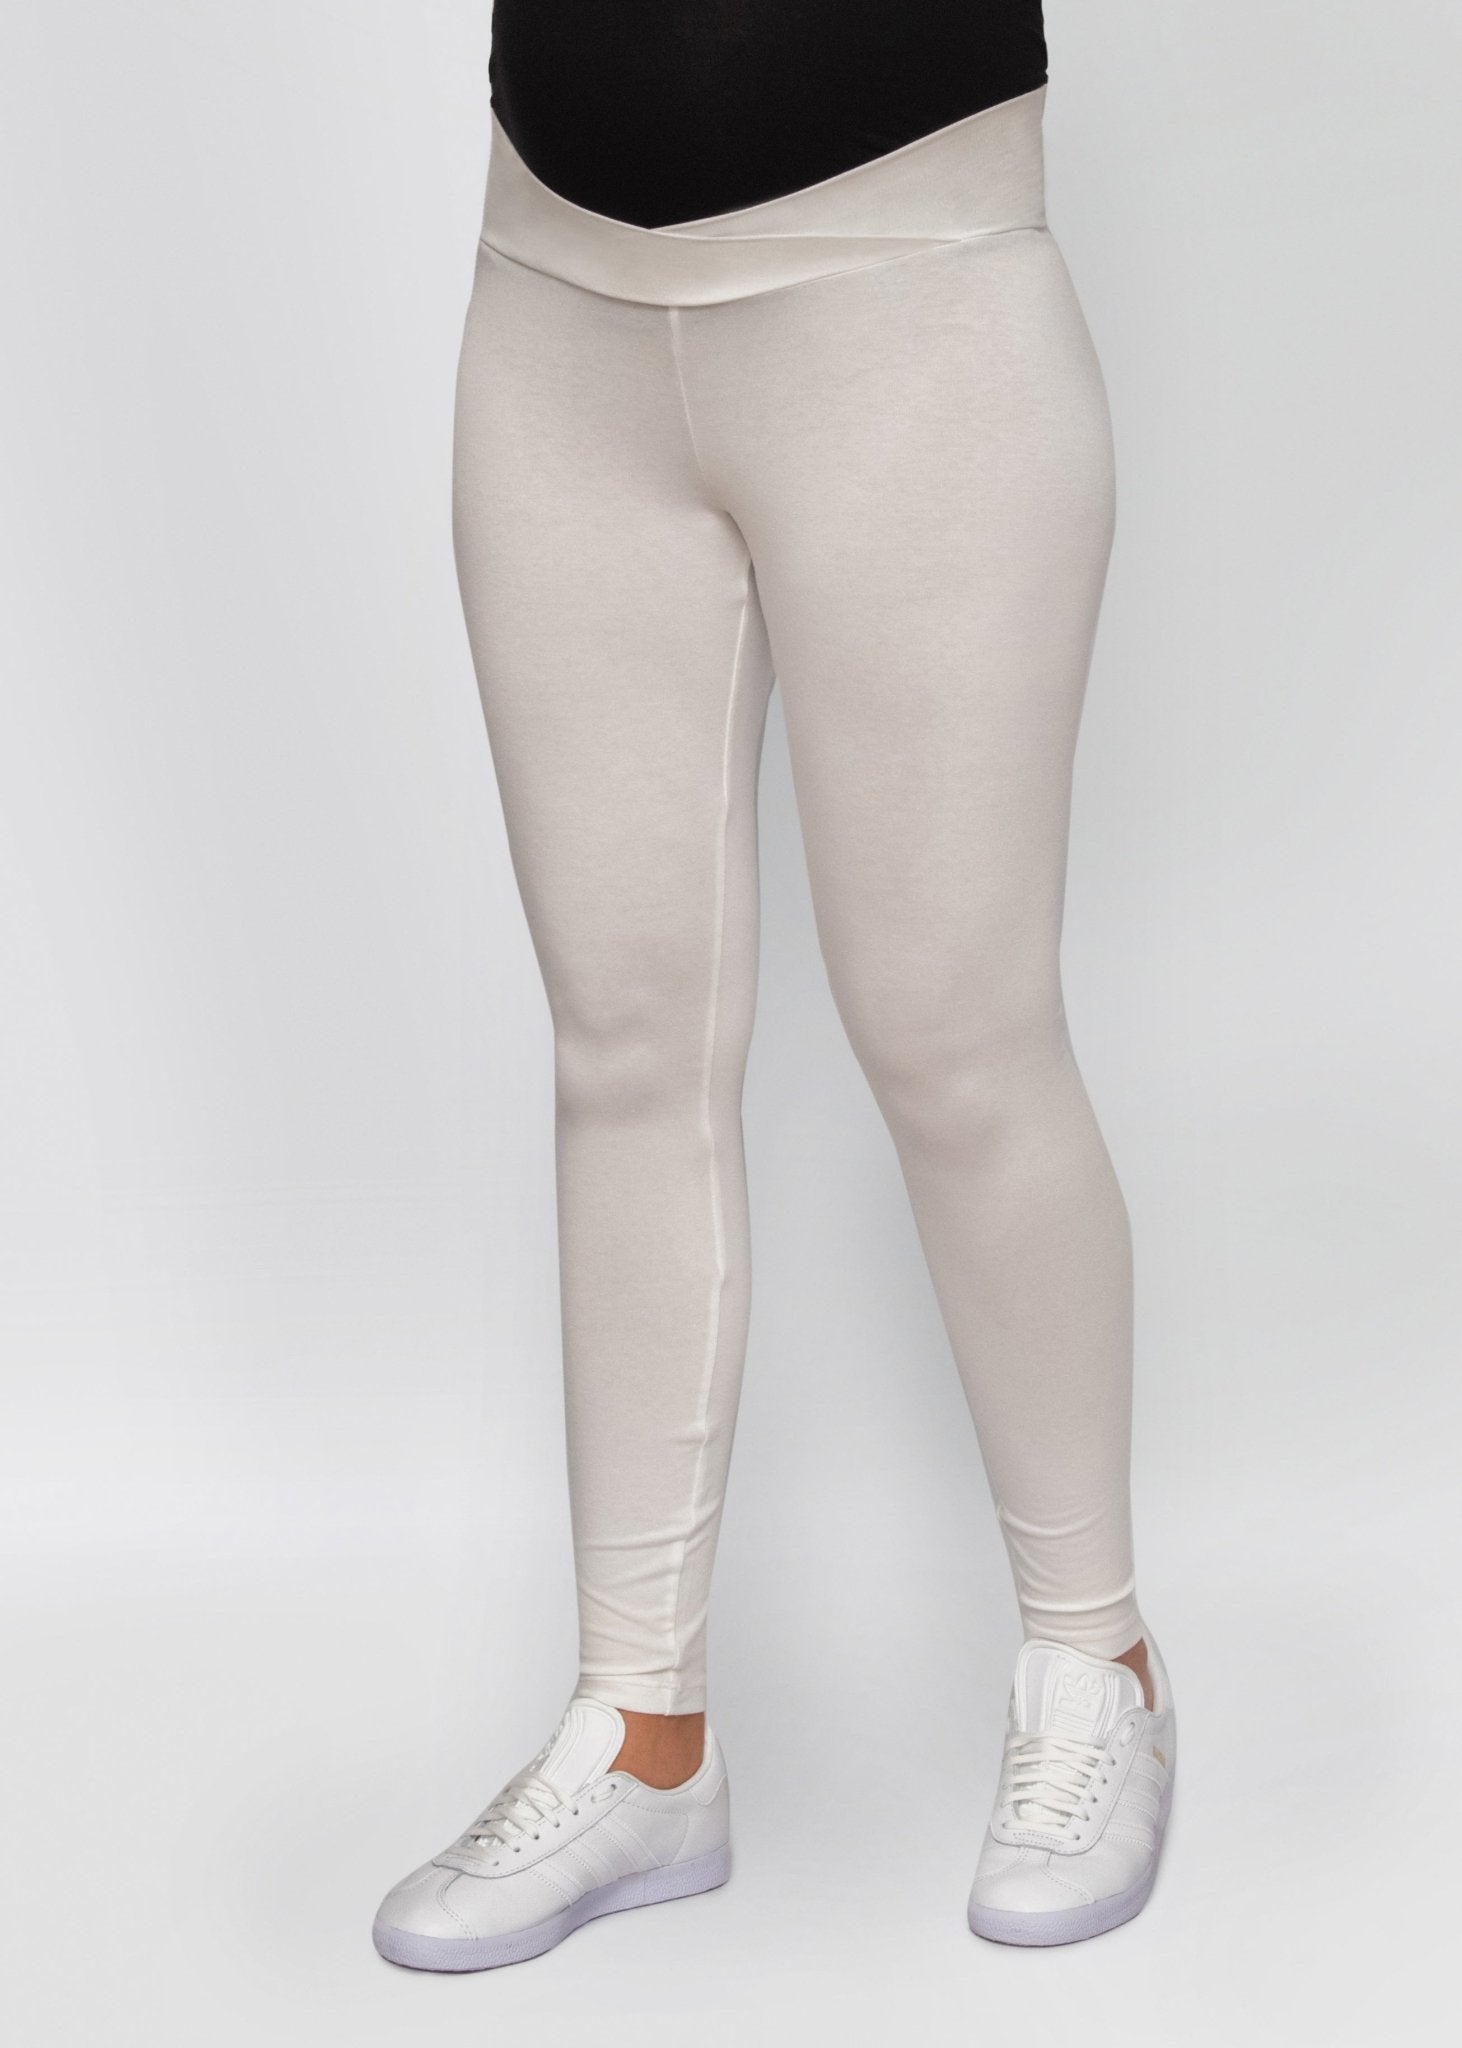 leggings - white-Úton Maternity-stride